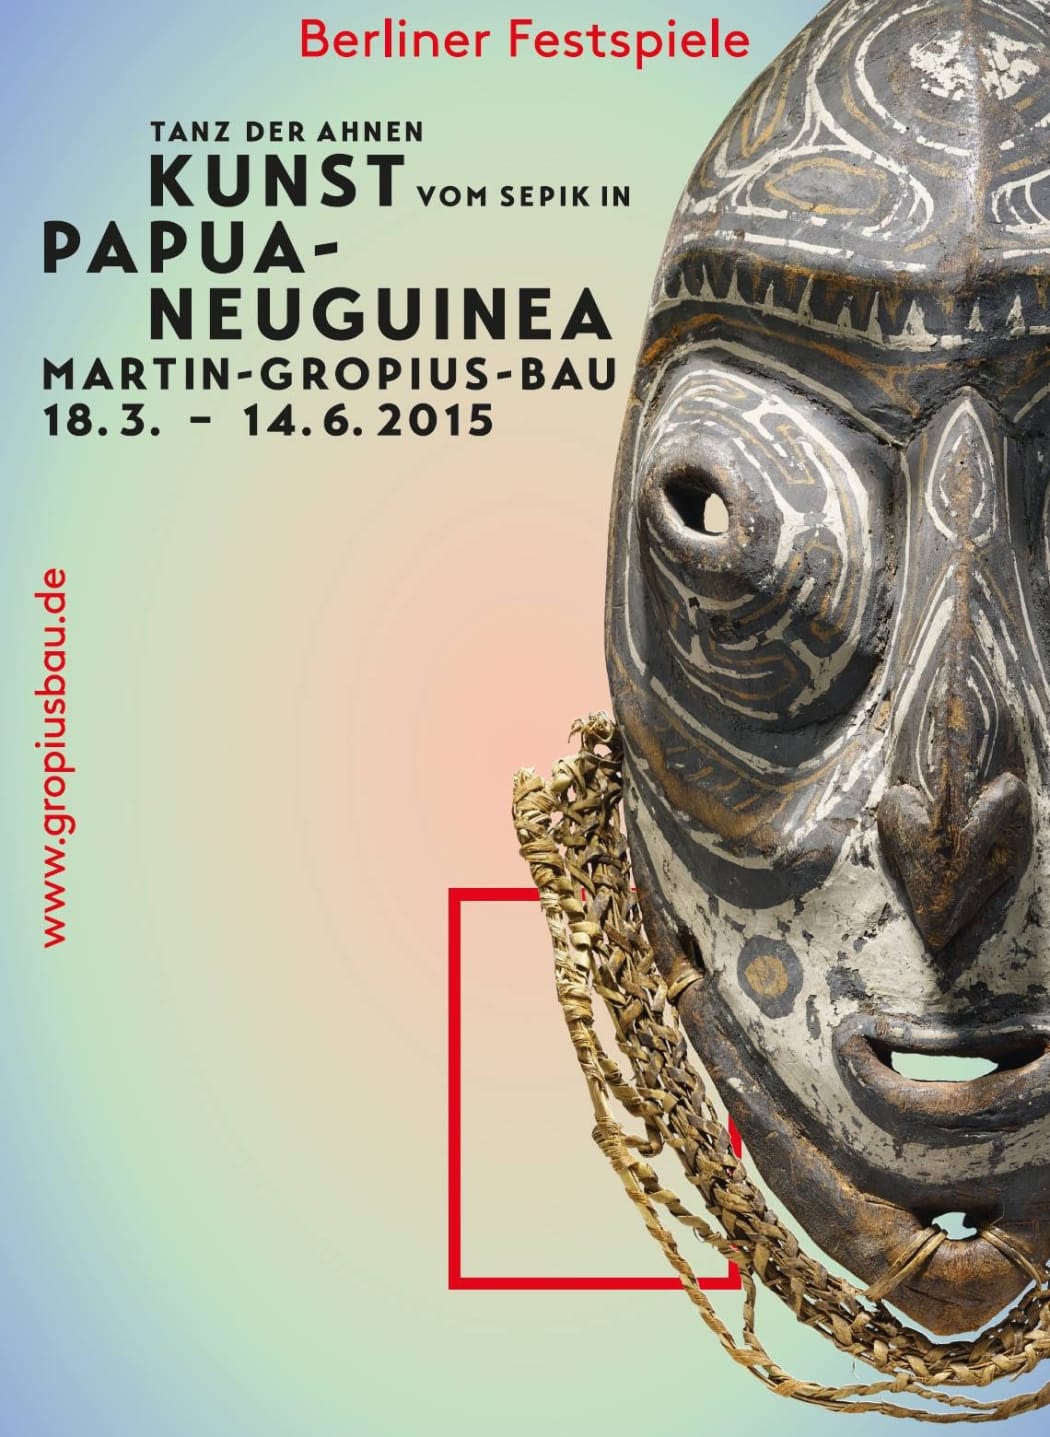 “Dance of the Ancestors – Art from the Sepik of Papua New Guinea” at Berlin’s Martin-Gropius-Bau